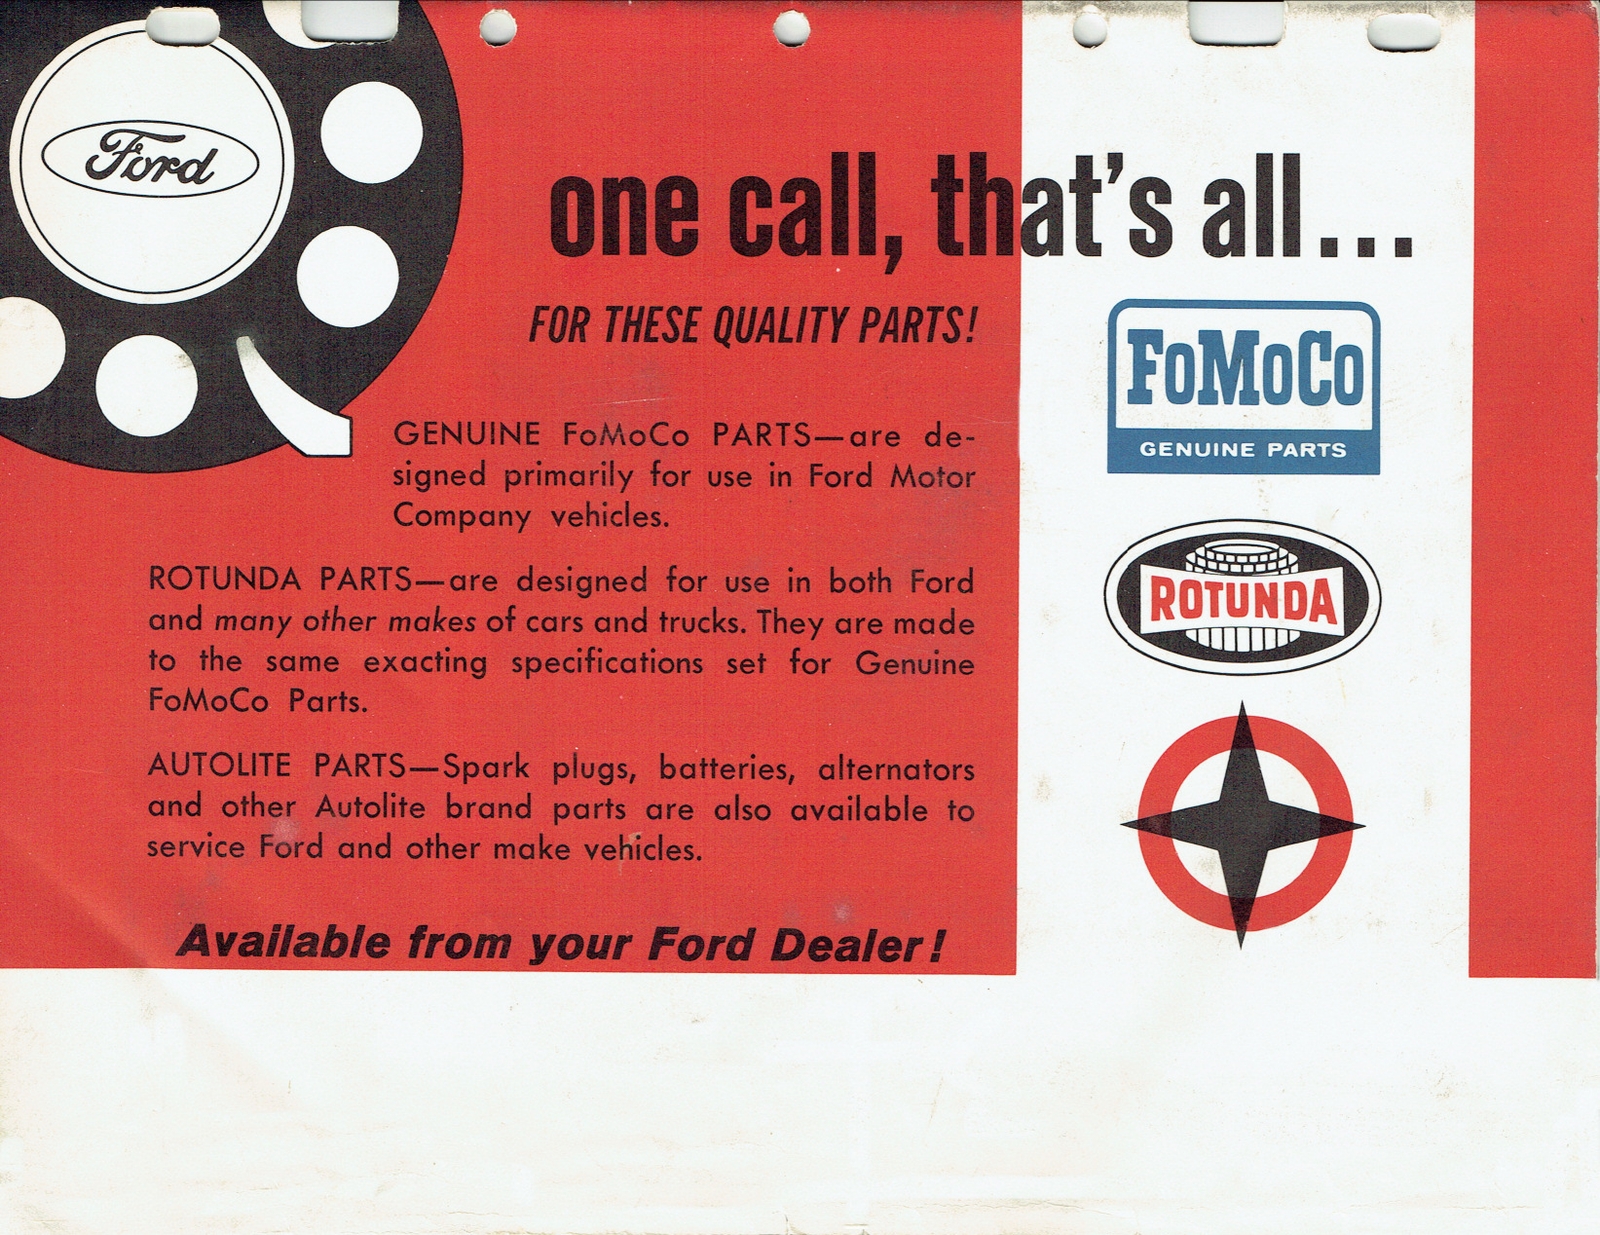 n_1956-1965 Ford Model & Engine ID Guide-16.jpg